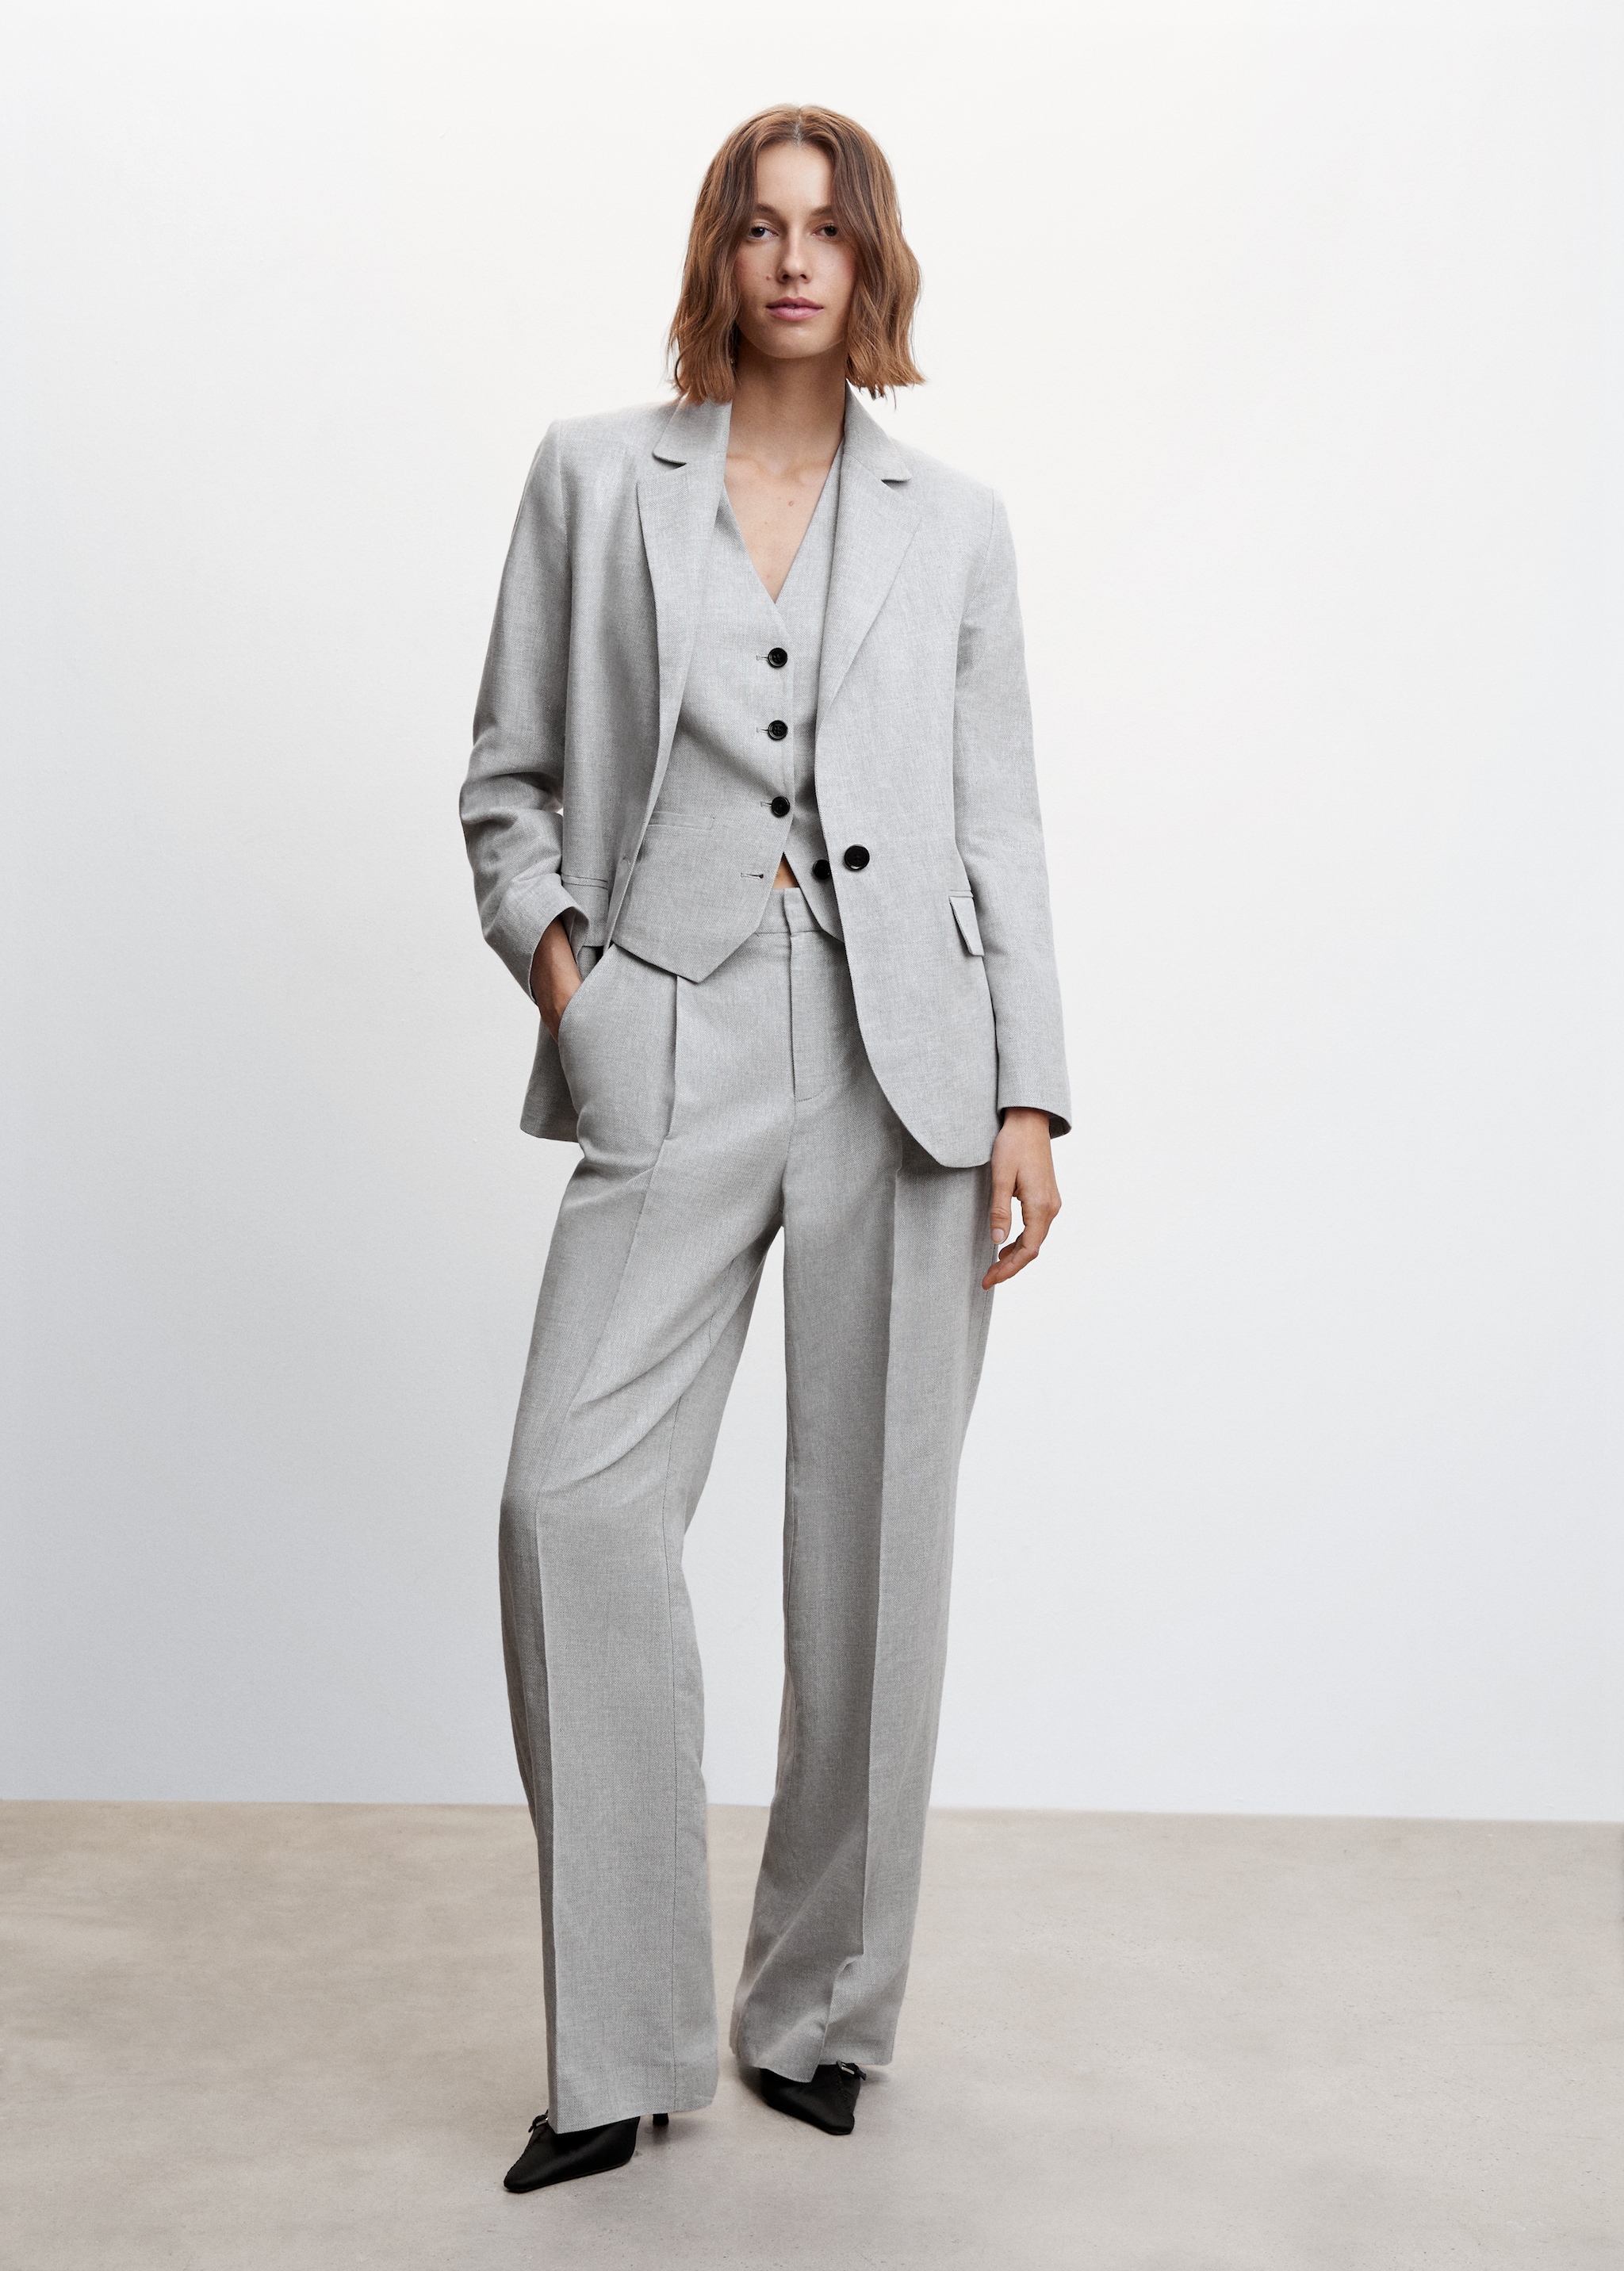 Herringbone linen suit waistcoat - General plane